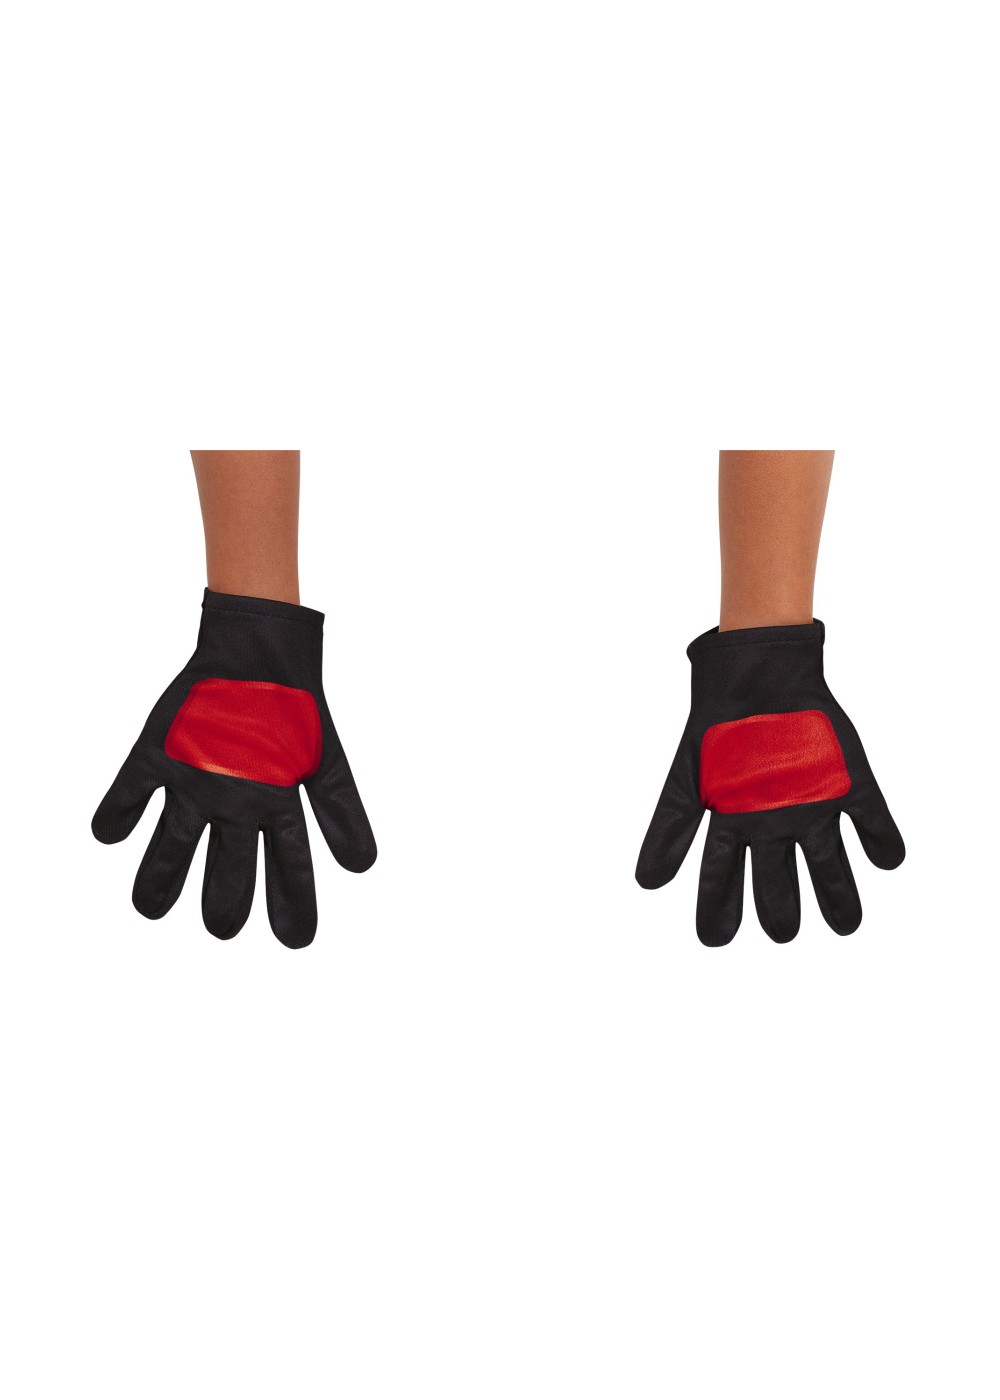 Power Rangers Red Toddler Gloves